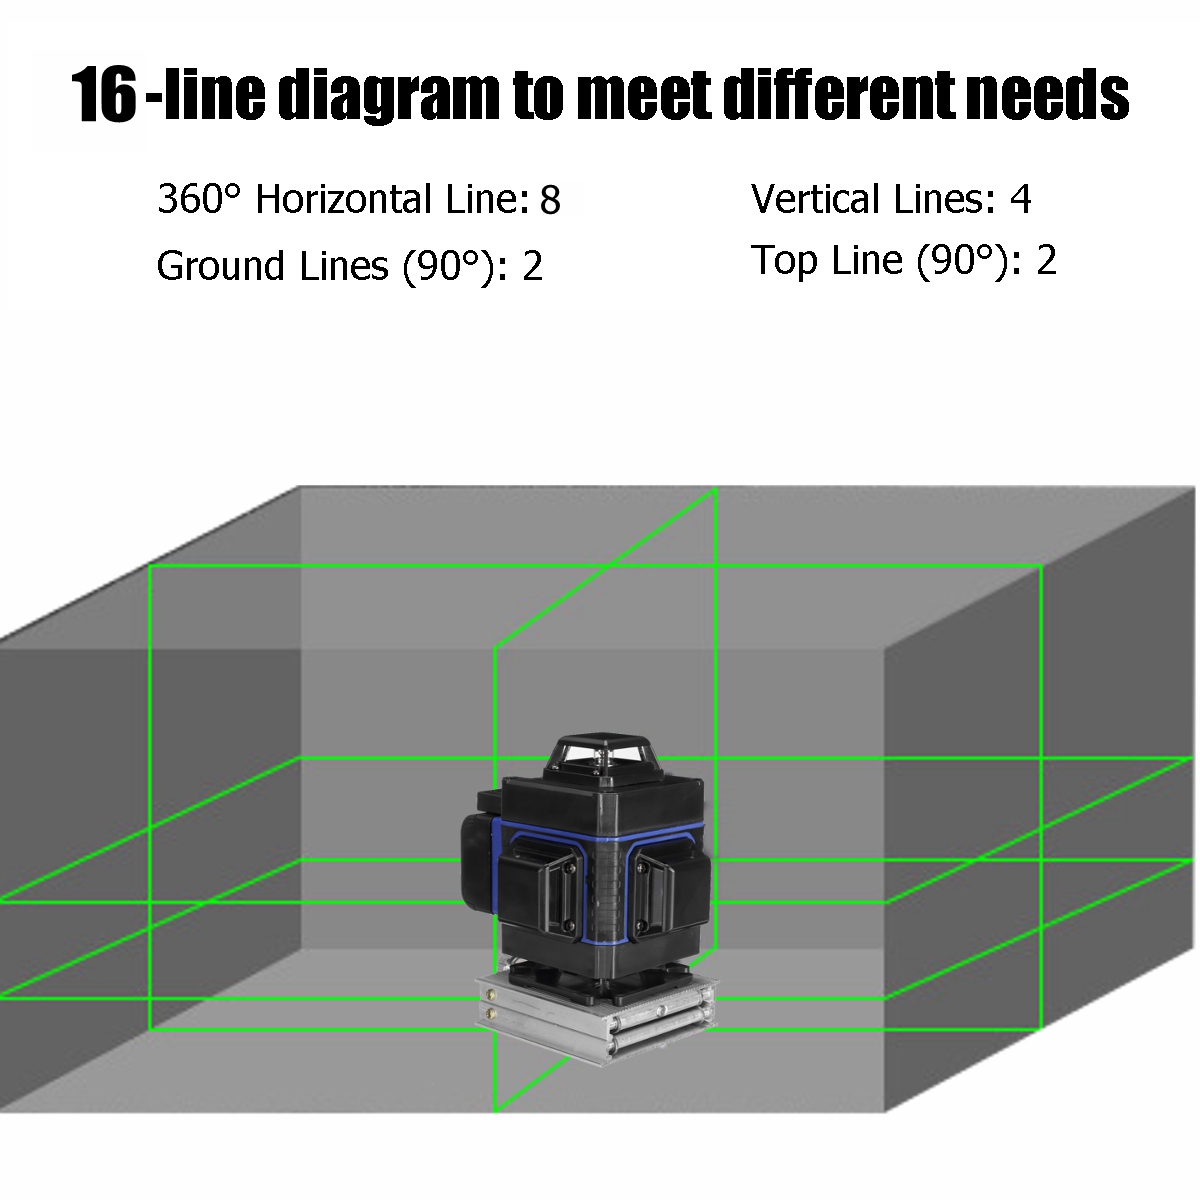 Rotary-Laser-Level-Green-16-Lines-3D-360deg-Cross-Line-Self-Leveling-Measure-Tool-1642218-10